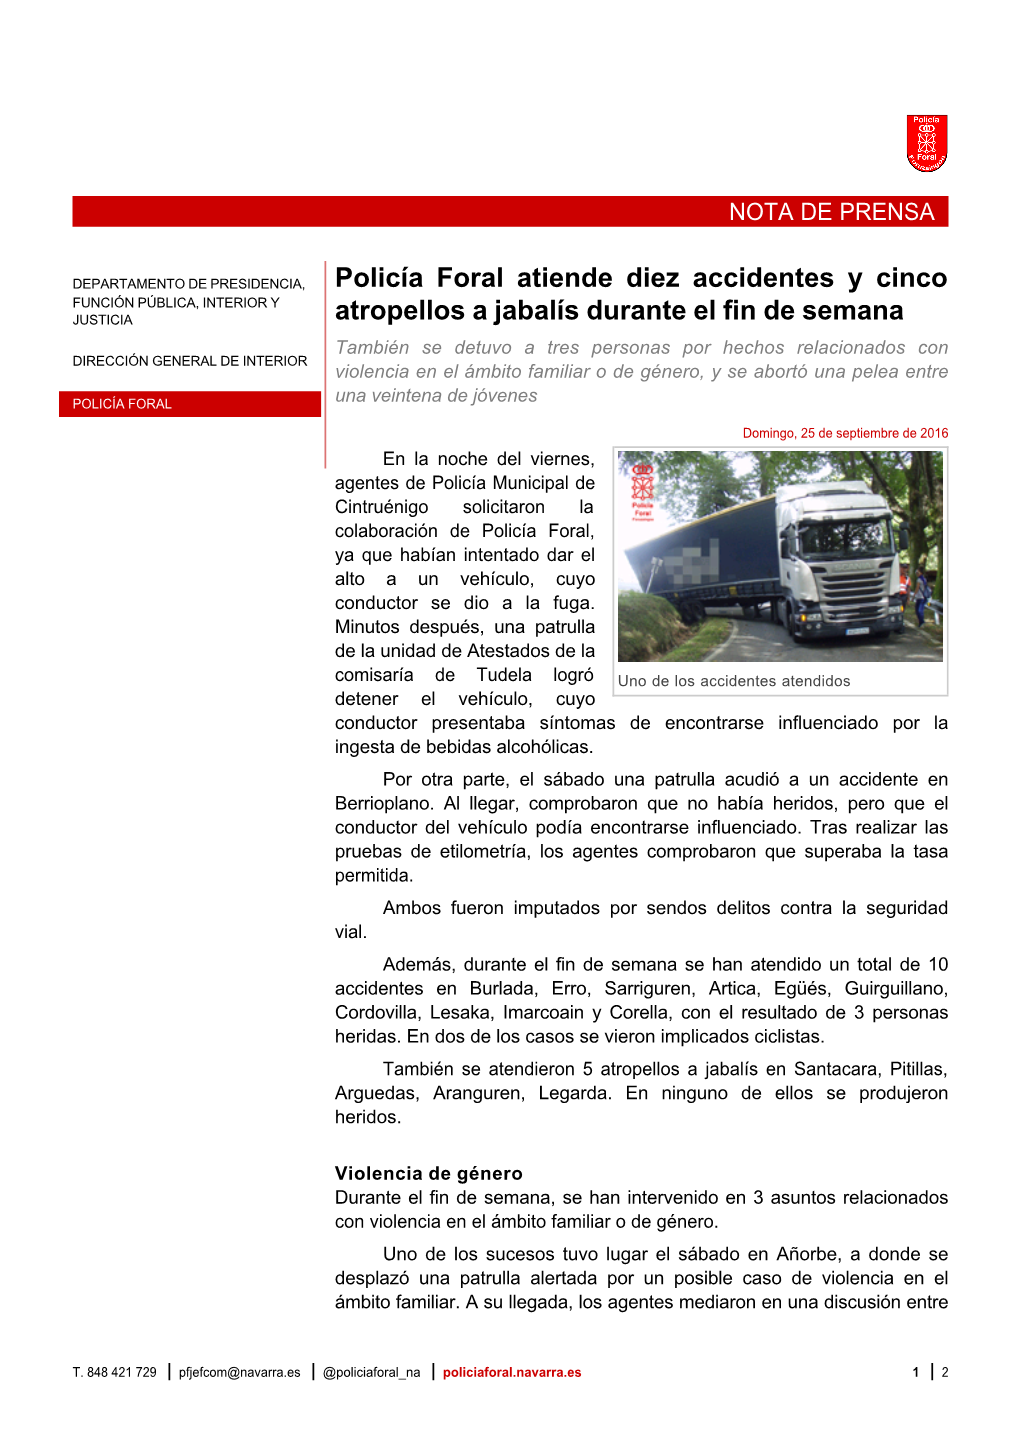 Policía Foral Atiende Diez Accidentes Y Cinco Atropellos a Jabalís Durante